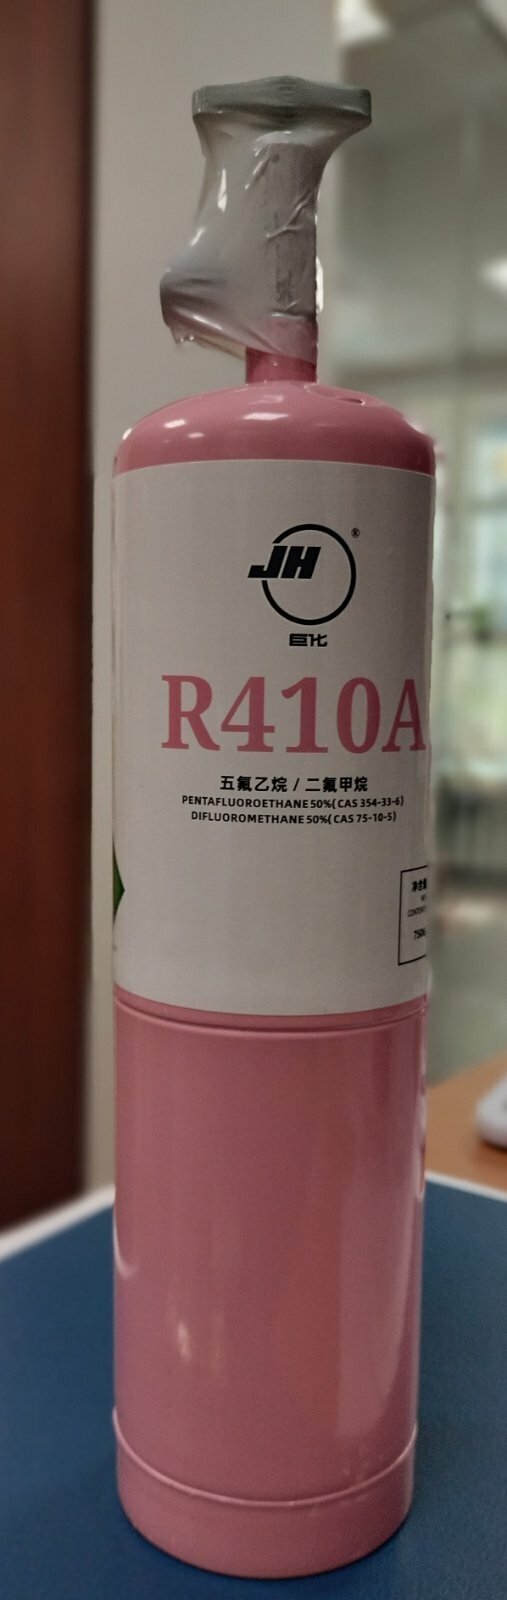 Фреон R410a в маленьком баллоне с вентилем (750гр.)